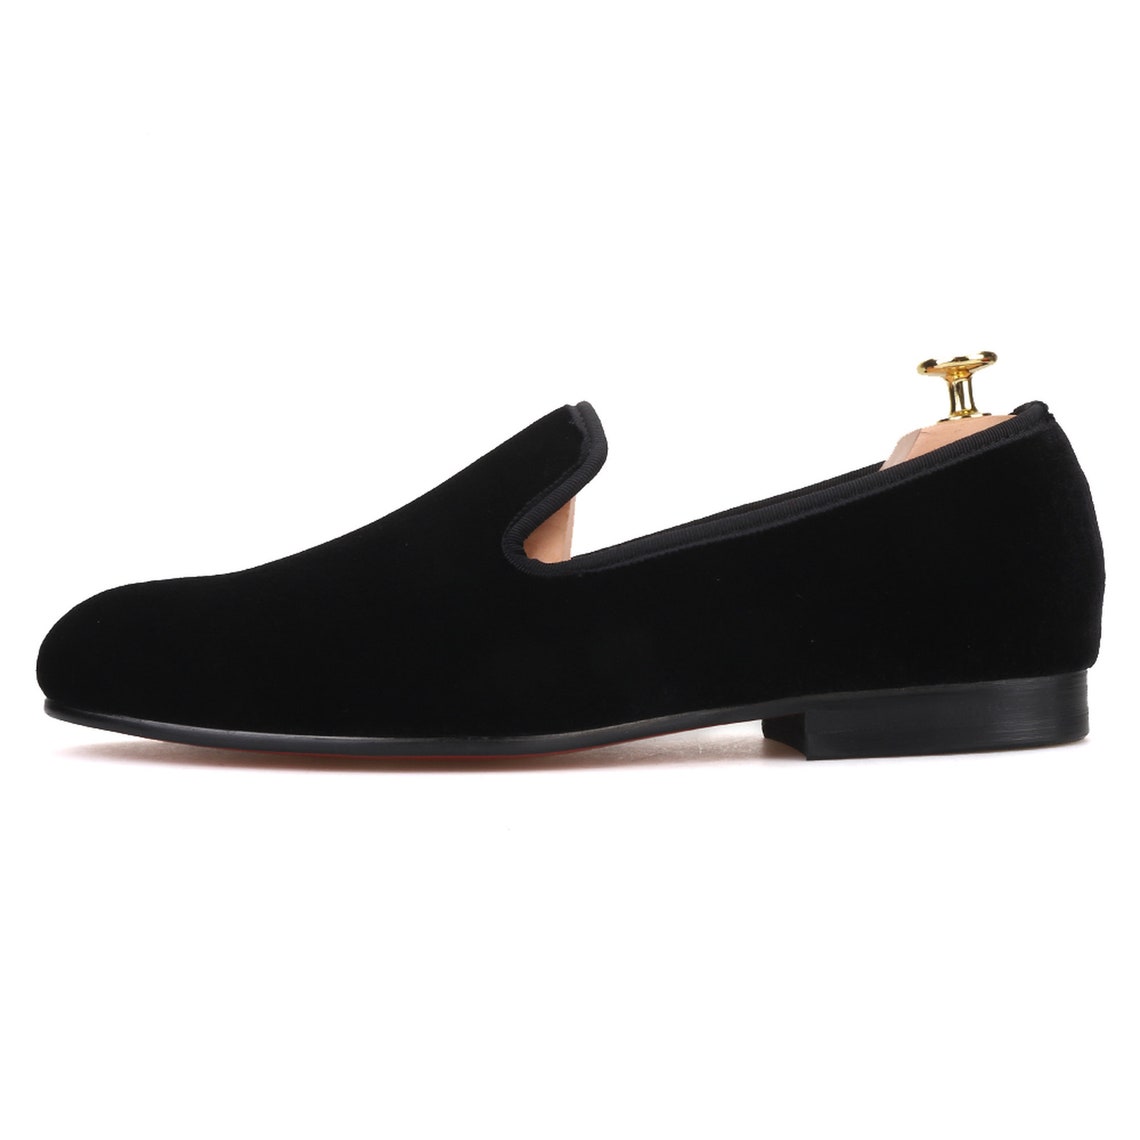 Merlutti Plain Black Velvet Slippers Loafers - Etsy